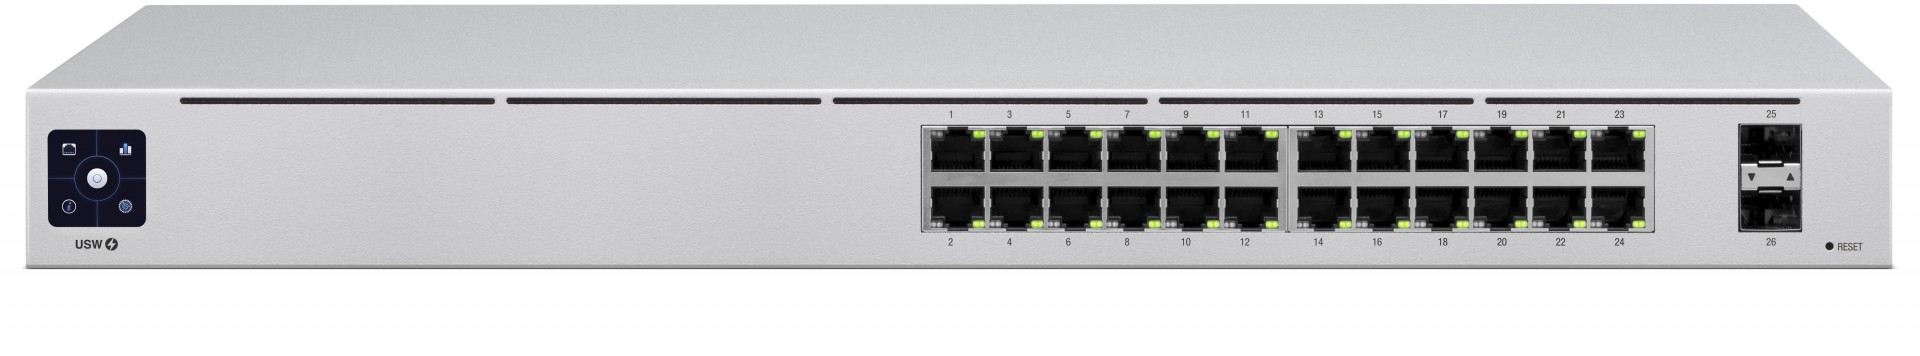 Ubiquiti UniFi GE Network Switch Managed (p/n- USW-24)